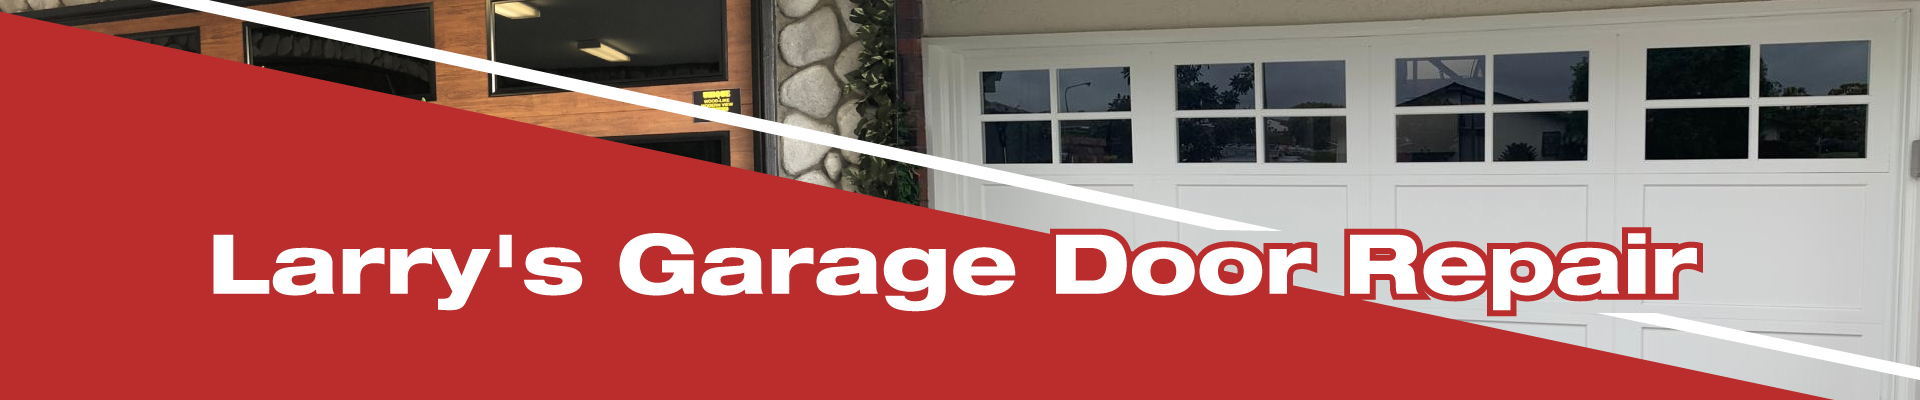 Garage Door Repair Visalia